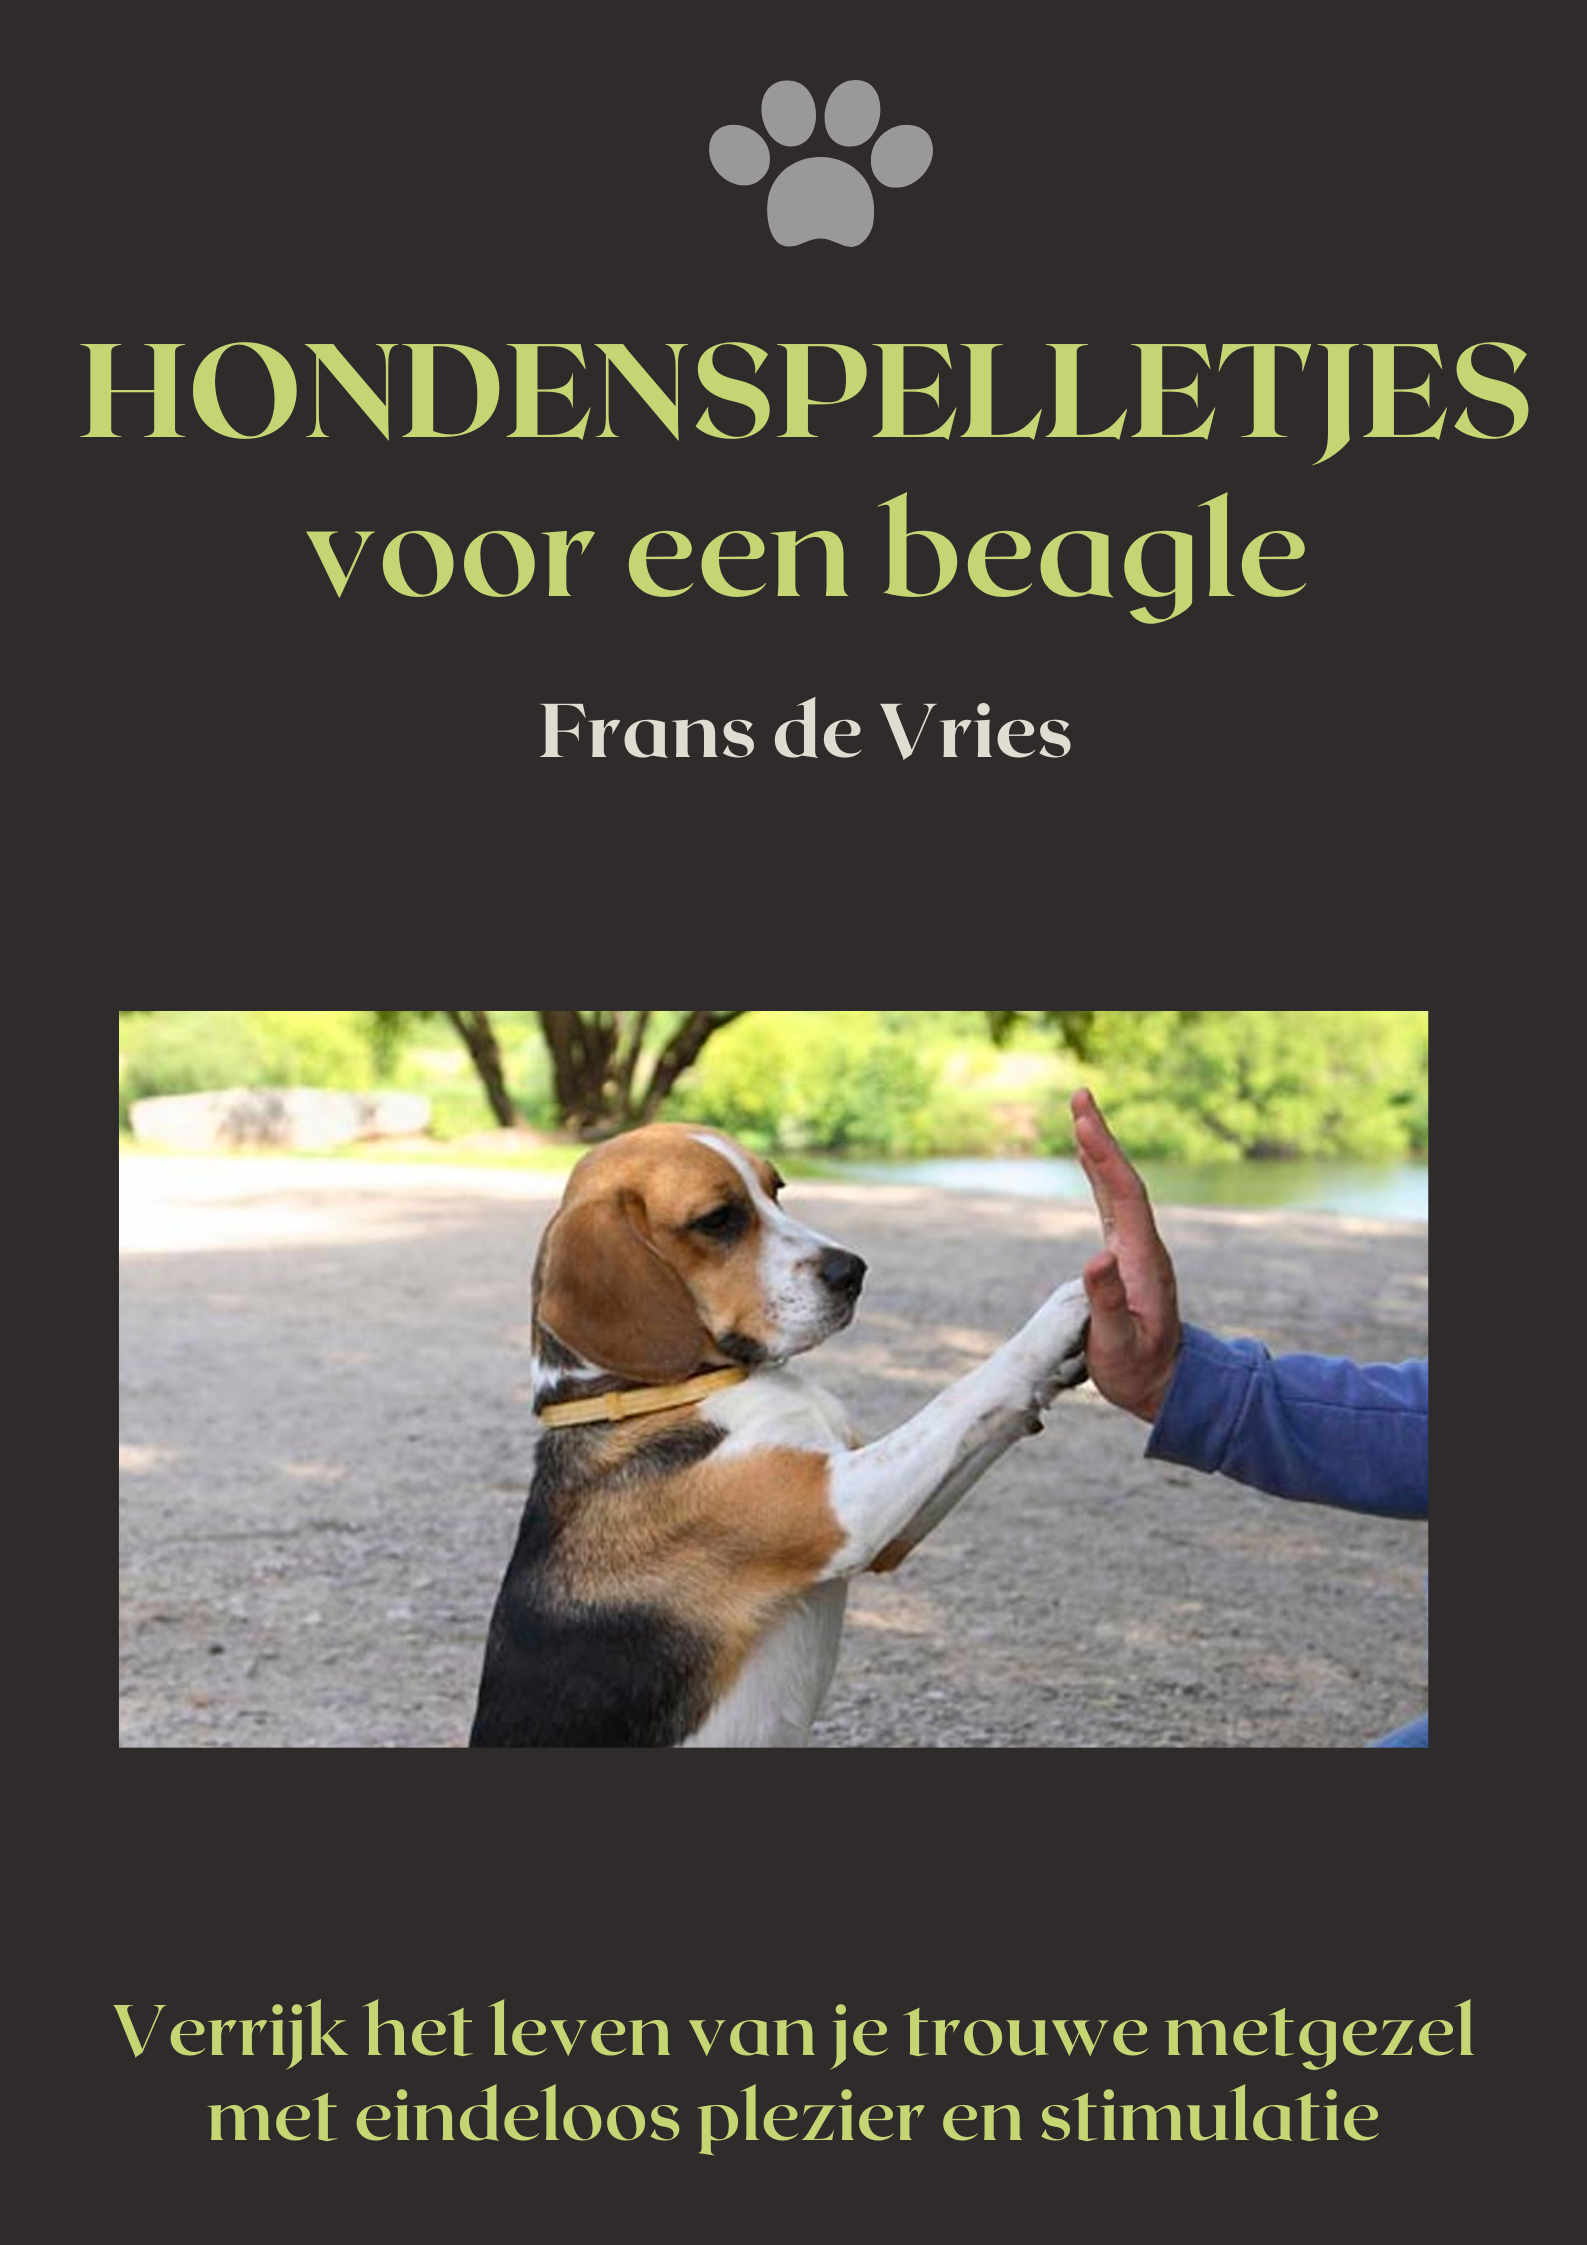 Hondenspelletjes voor je beagle